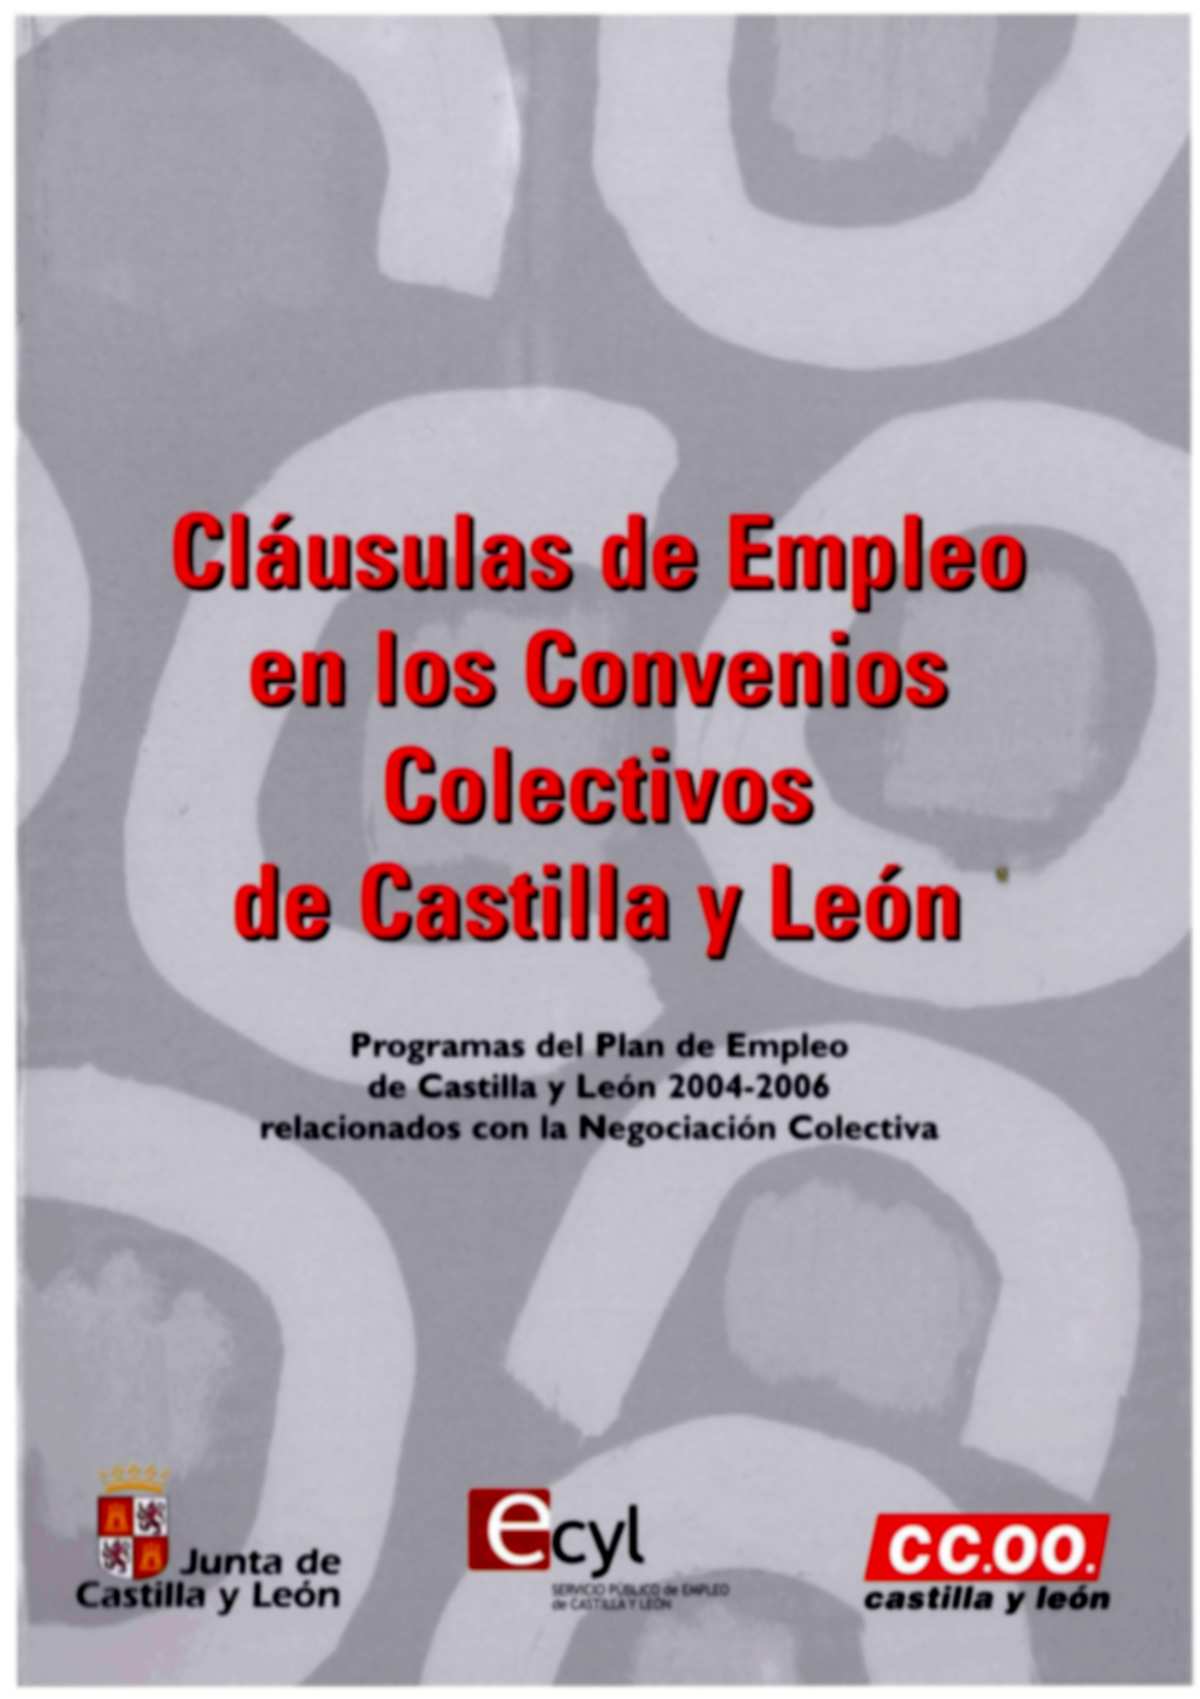 Esta Publicacin analiza las clausulas de empleo en los Convenios Colectivos de Castilla y Len, con el fin de identificar y valorar los aspectos relativos a la mejora de las condiciones de la contrat